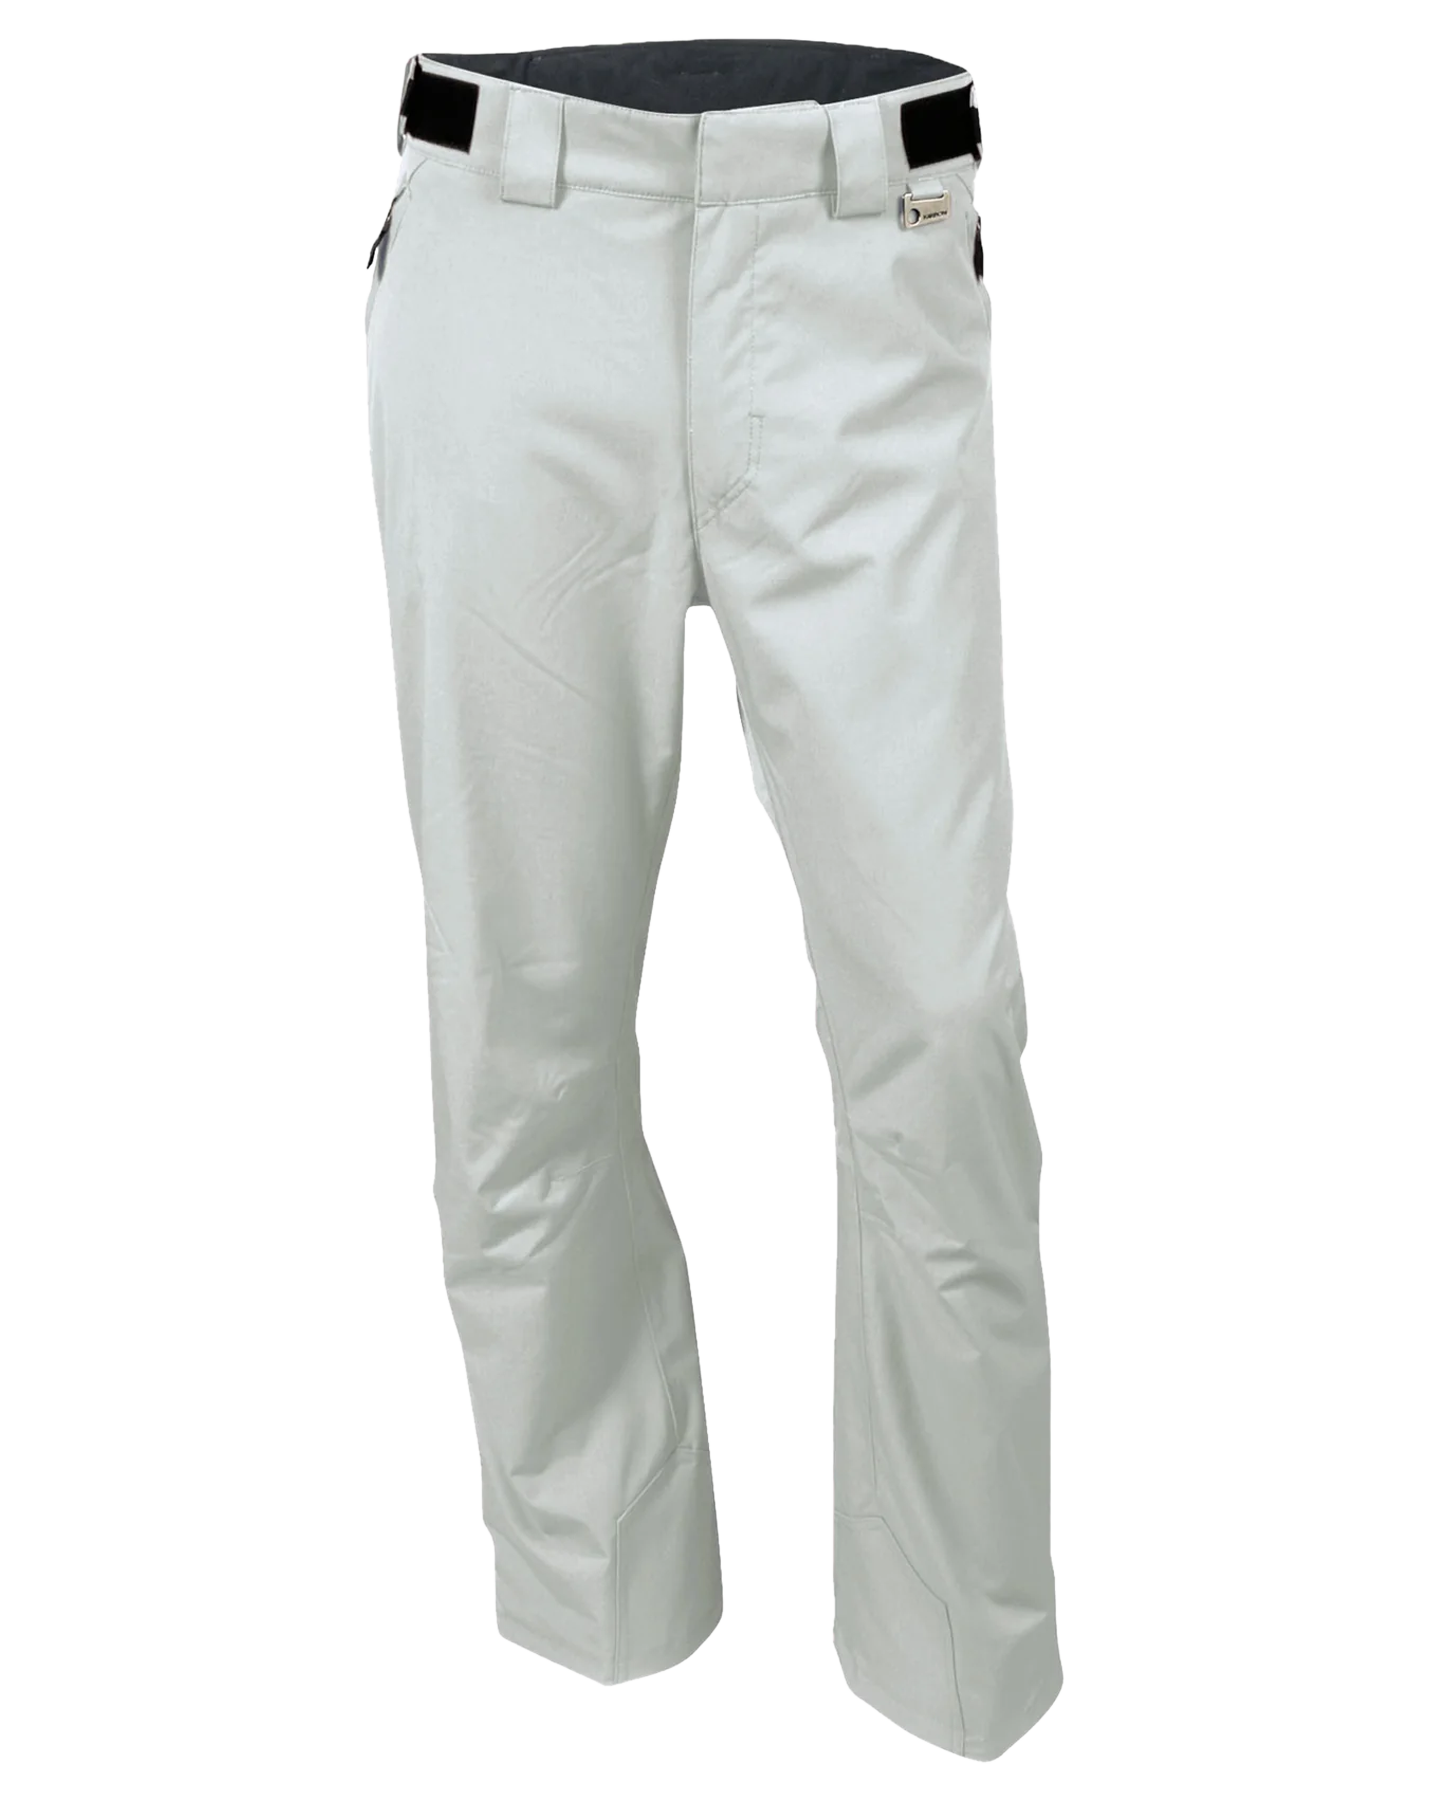 Karbon Silver II Graphite Alpha Snow Pants - Glacier Men's Snow Pants - SnowSkiersWarehouse